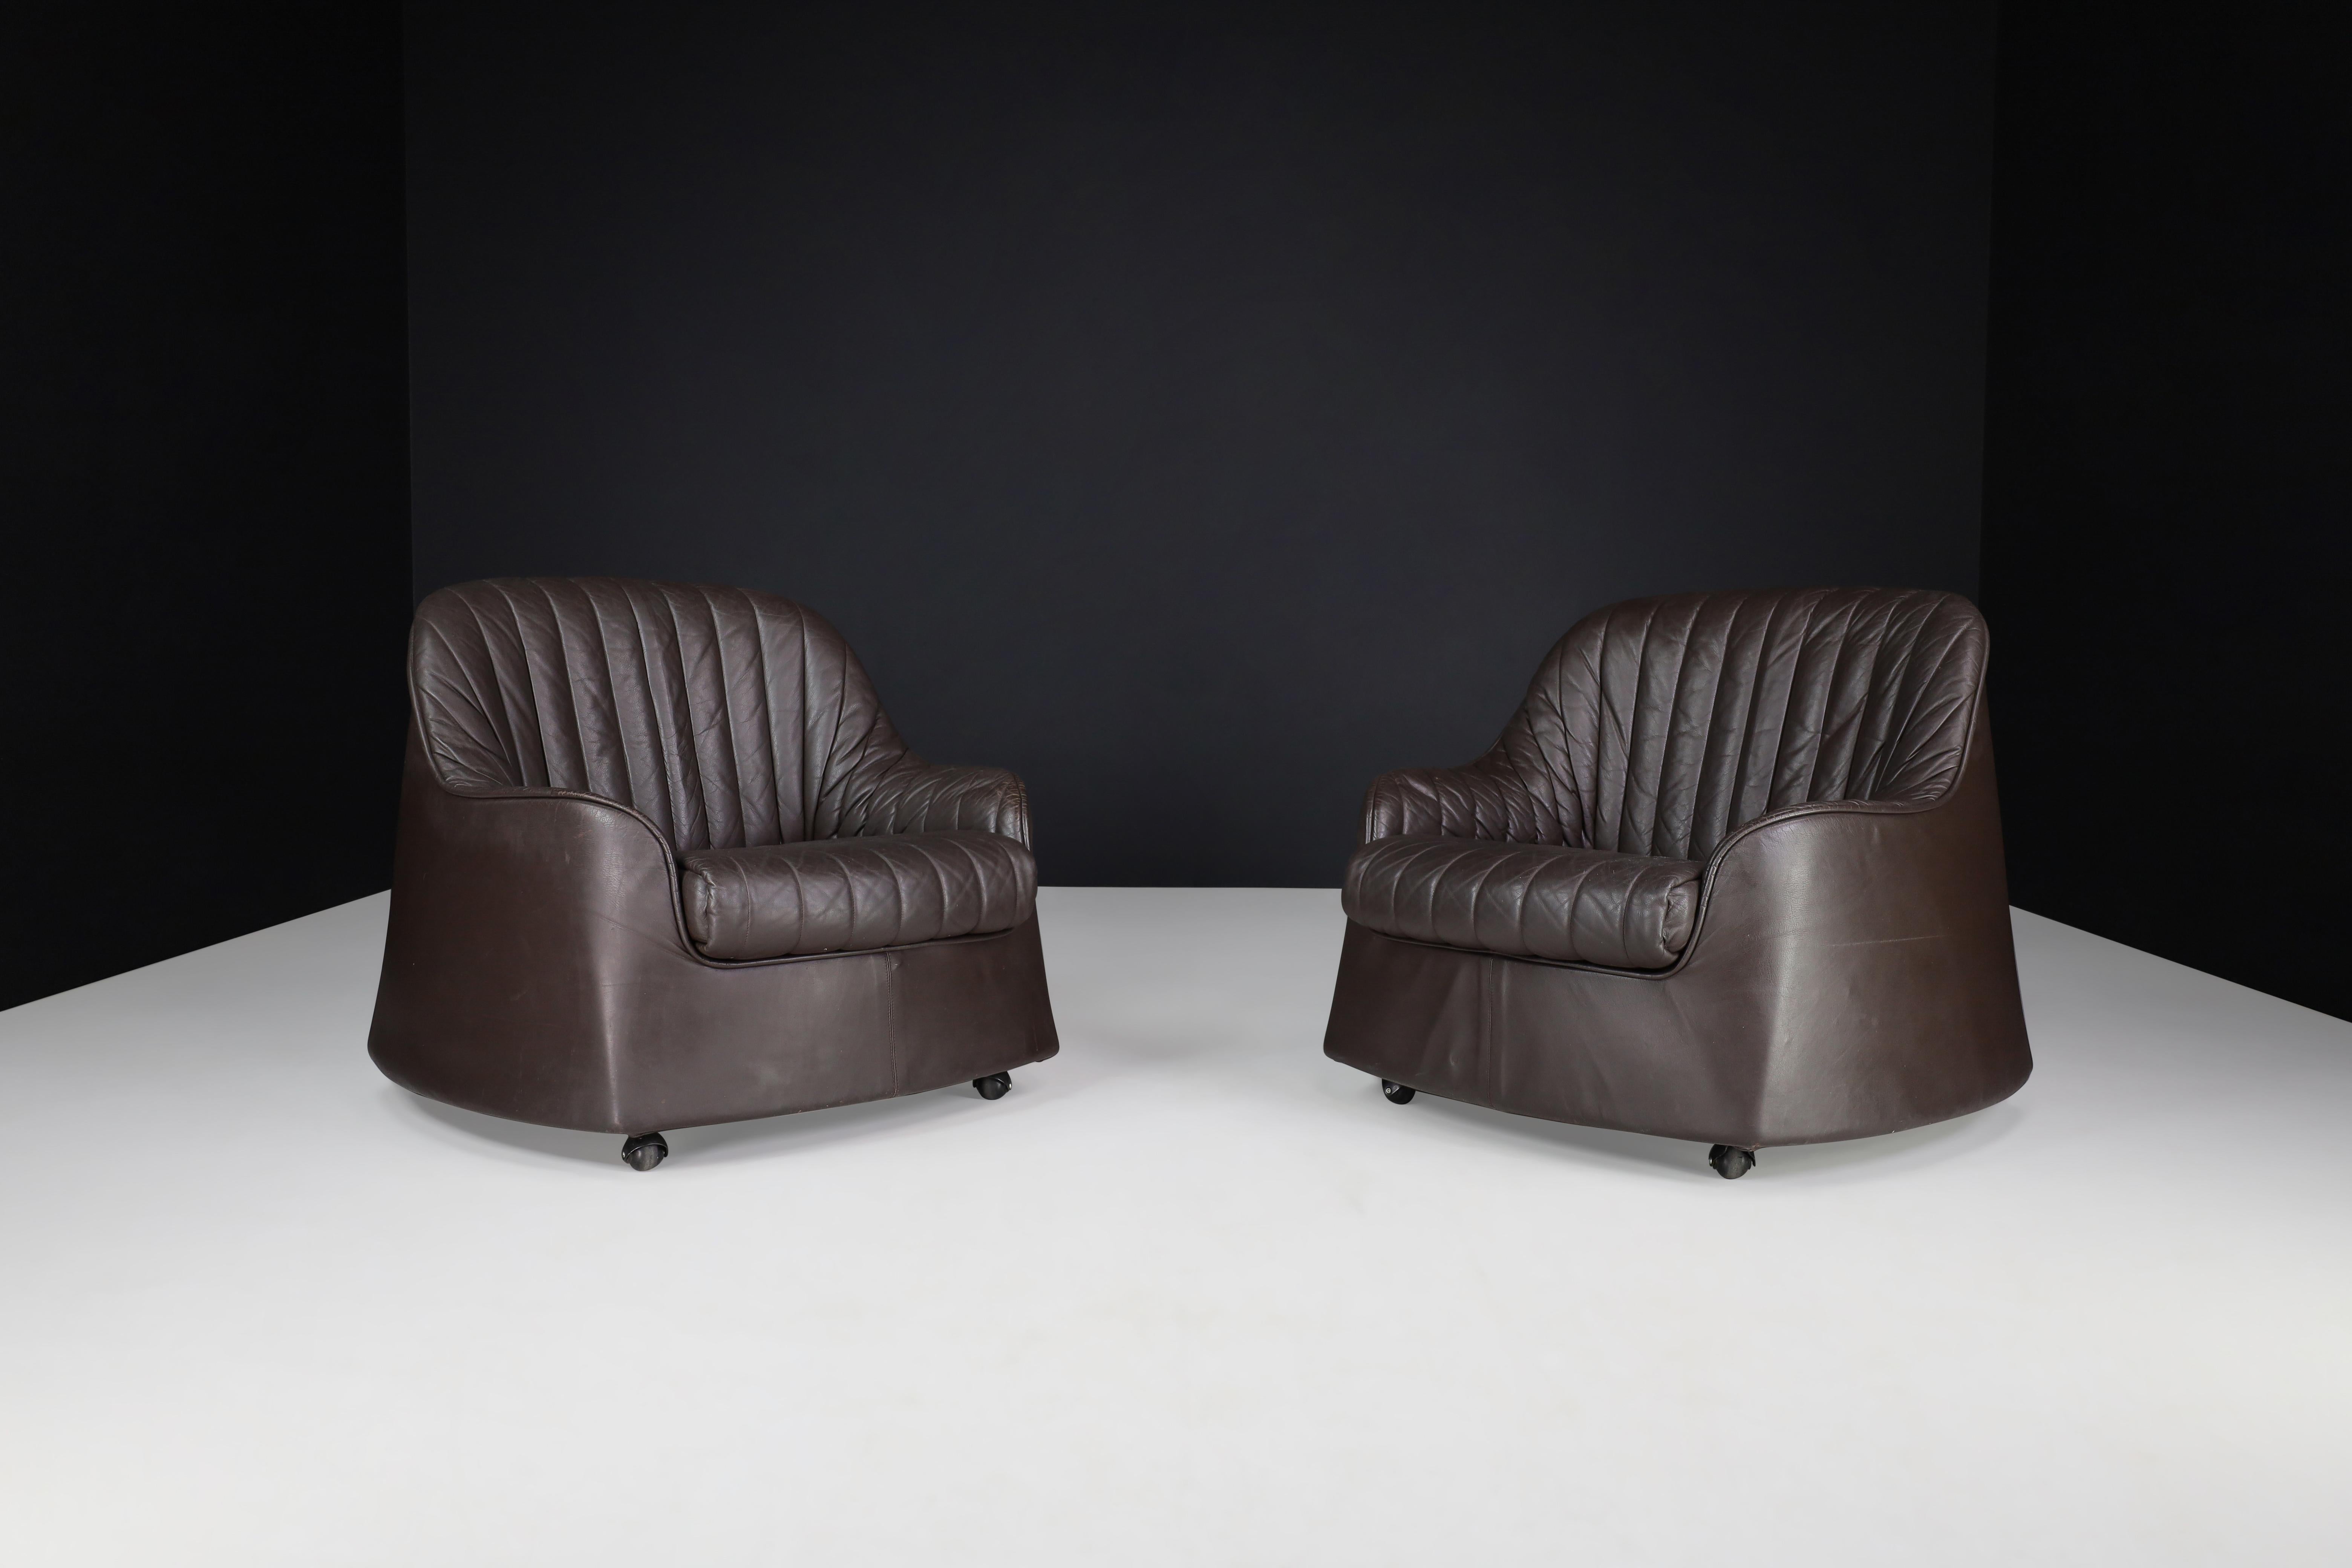 Cassina Ciprea Loungesessel von Tobia und Afra Scarpa, 1970er Jahre, Italien

Schöne Lounge-Stühle in Italien von Tobia und Afra Scarpa für Cassina in Italien 1970er Jahren gemacht. Die organische, geschwungene Form und das weiche, hochwertige Leder